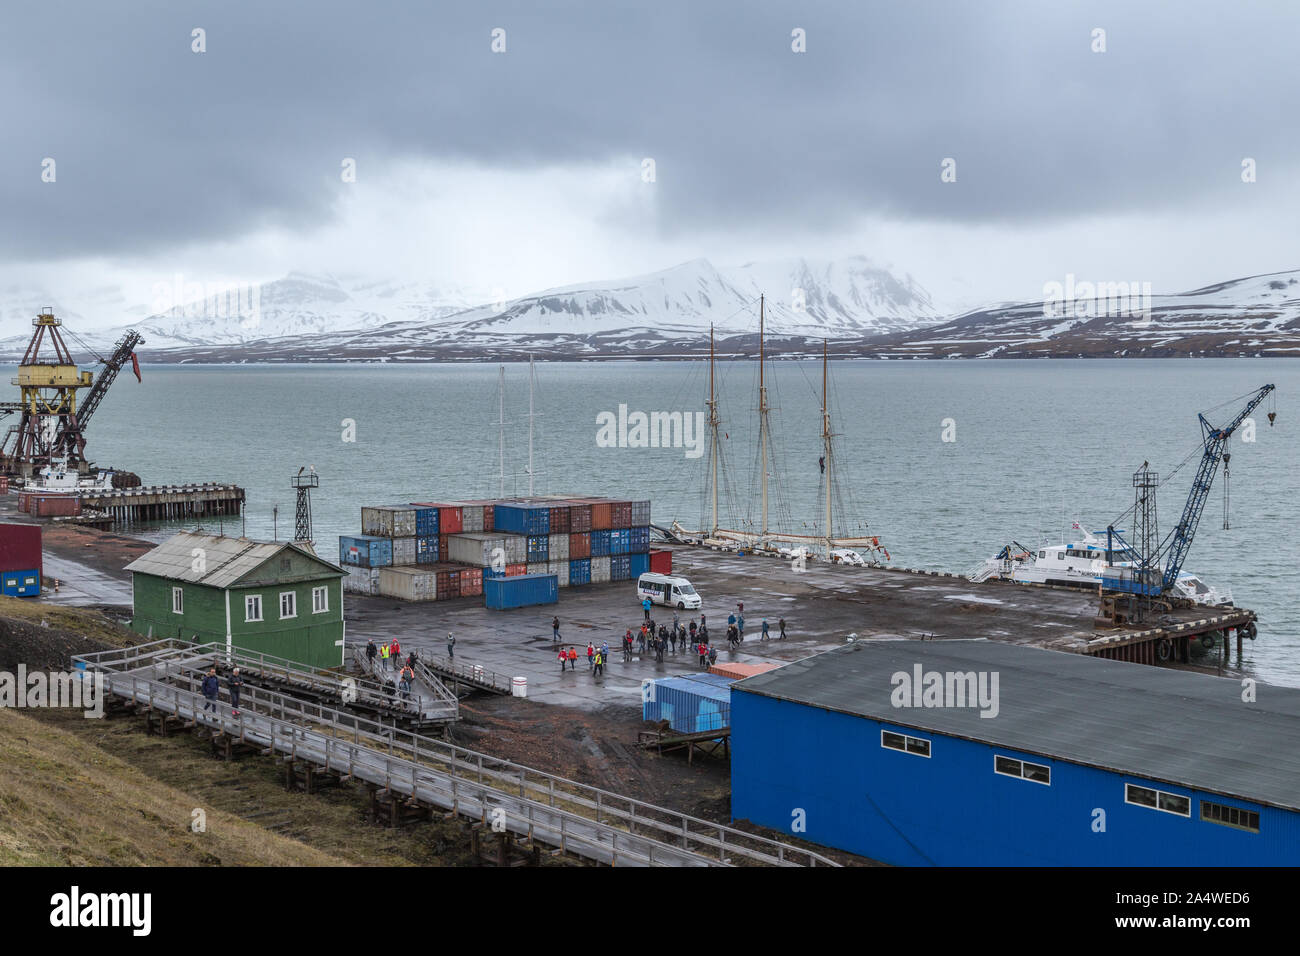 Les touristes à l'atterrissage à l'Harbour dans les mines de charbon russe Barentsburg règlement à Svalbard, Spitzberg, la Norvège dans l'Arctique Banque D'Images